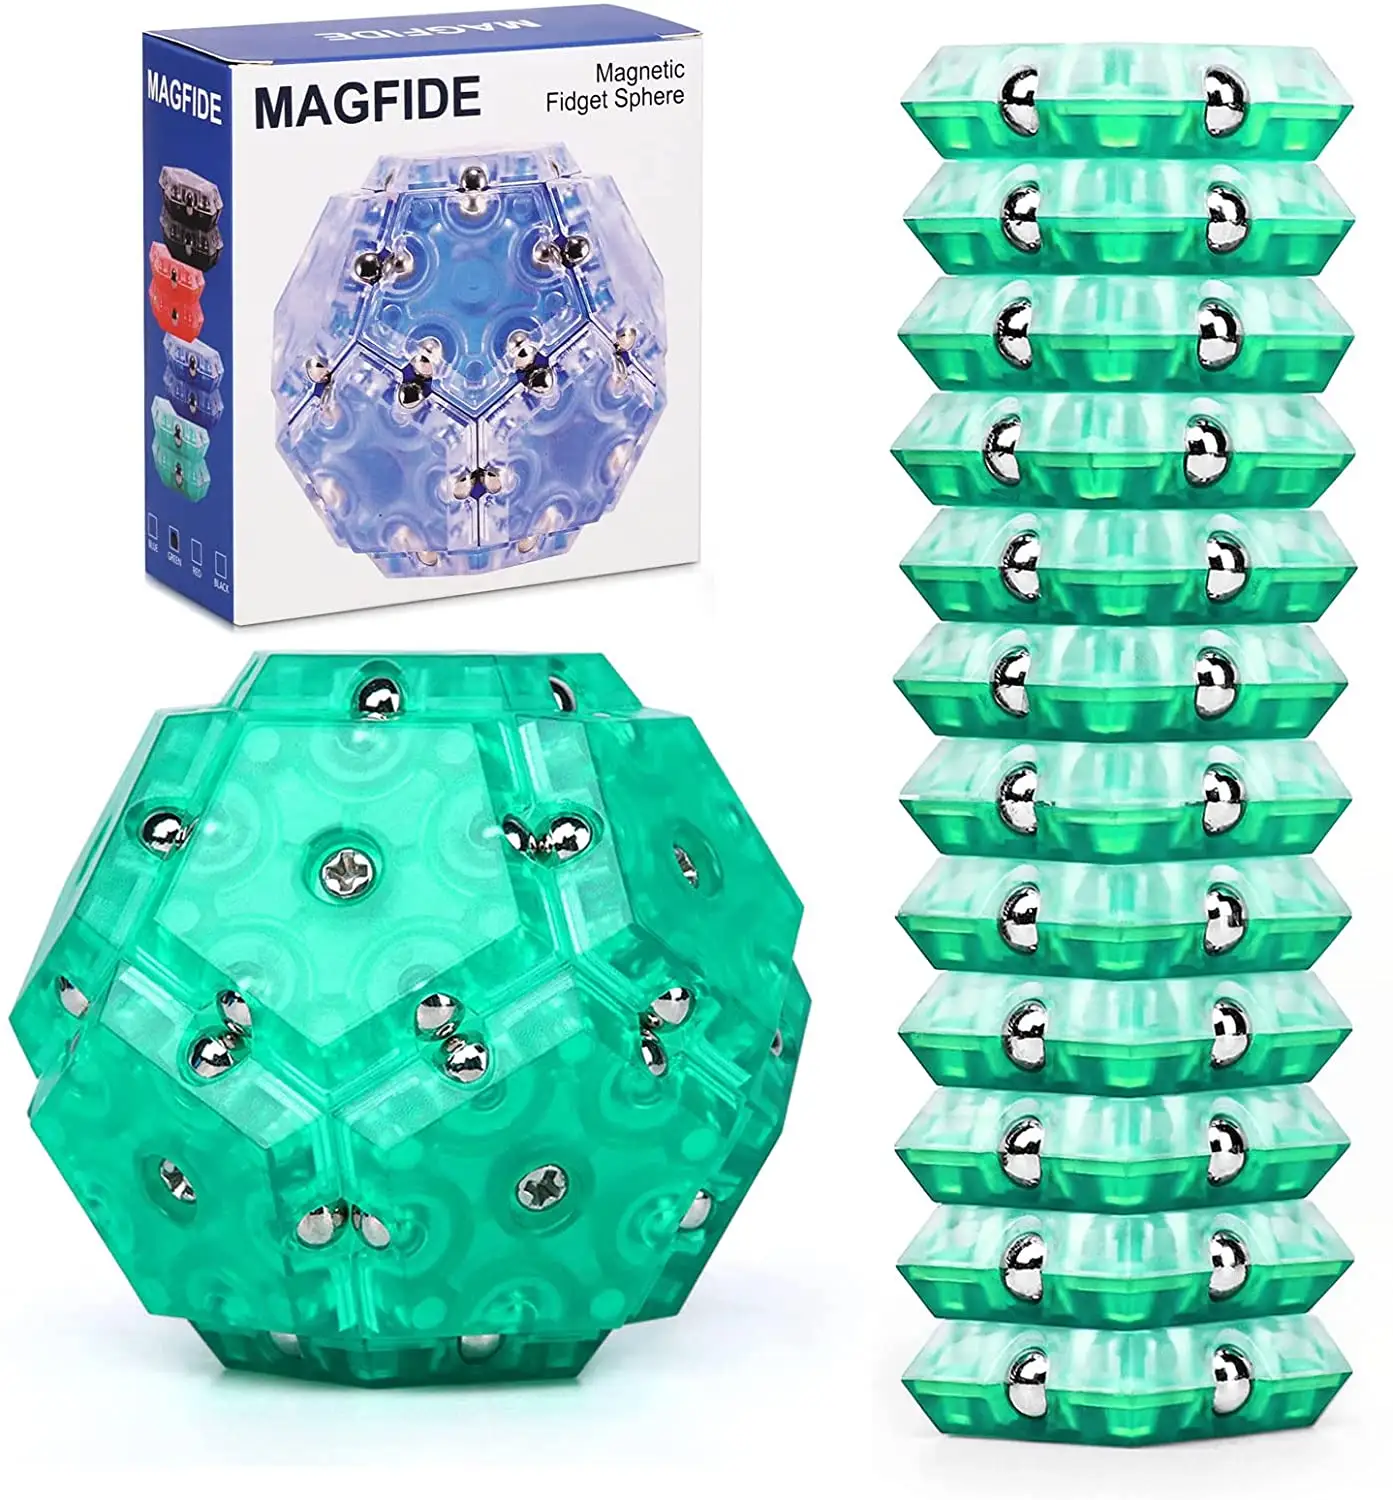 Magnetic Fidget Sphere 12 Pcs Set Pentagon Puzzle Transform Balls Building DIY Block Stress Relief Desk Science Toys for Teens